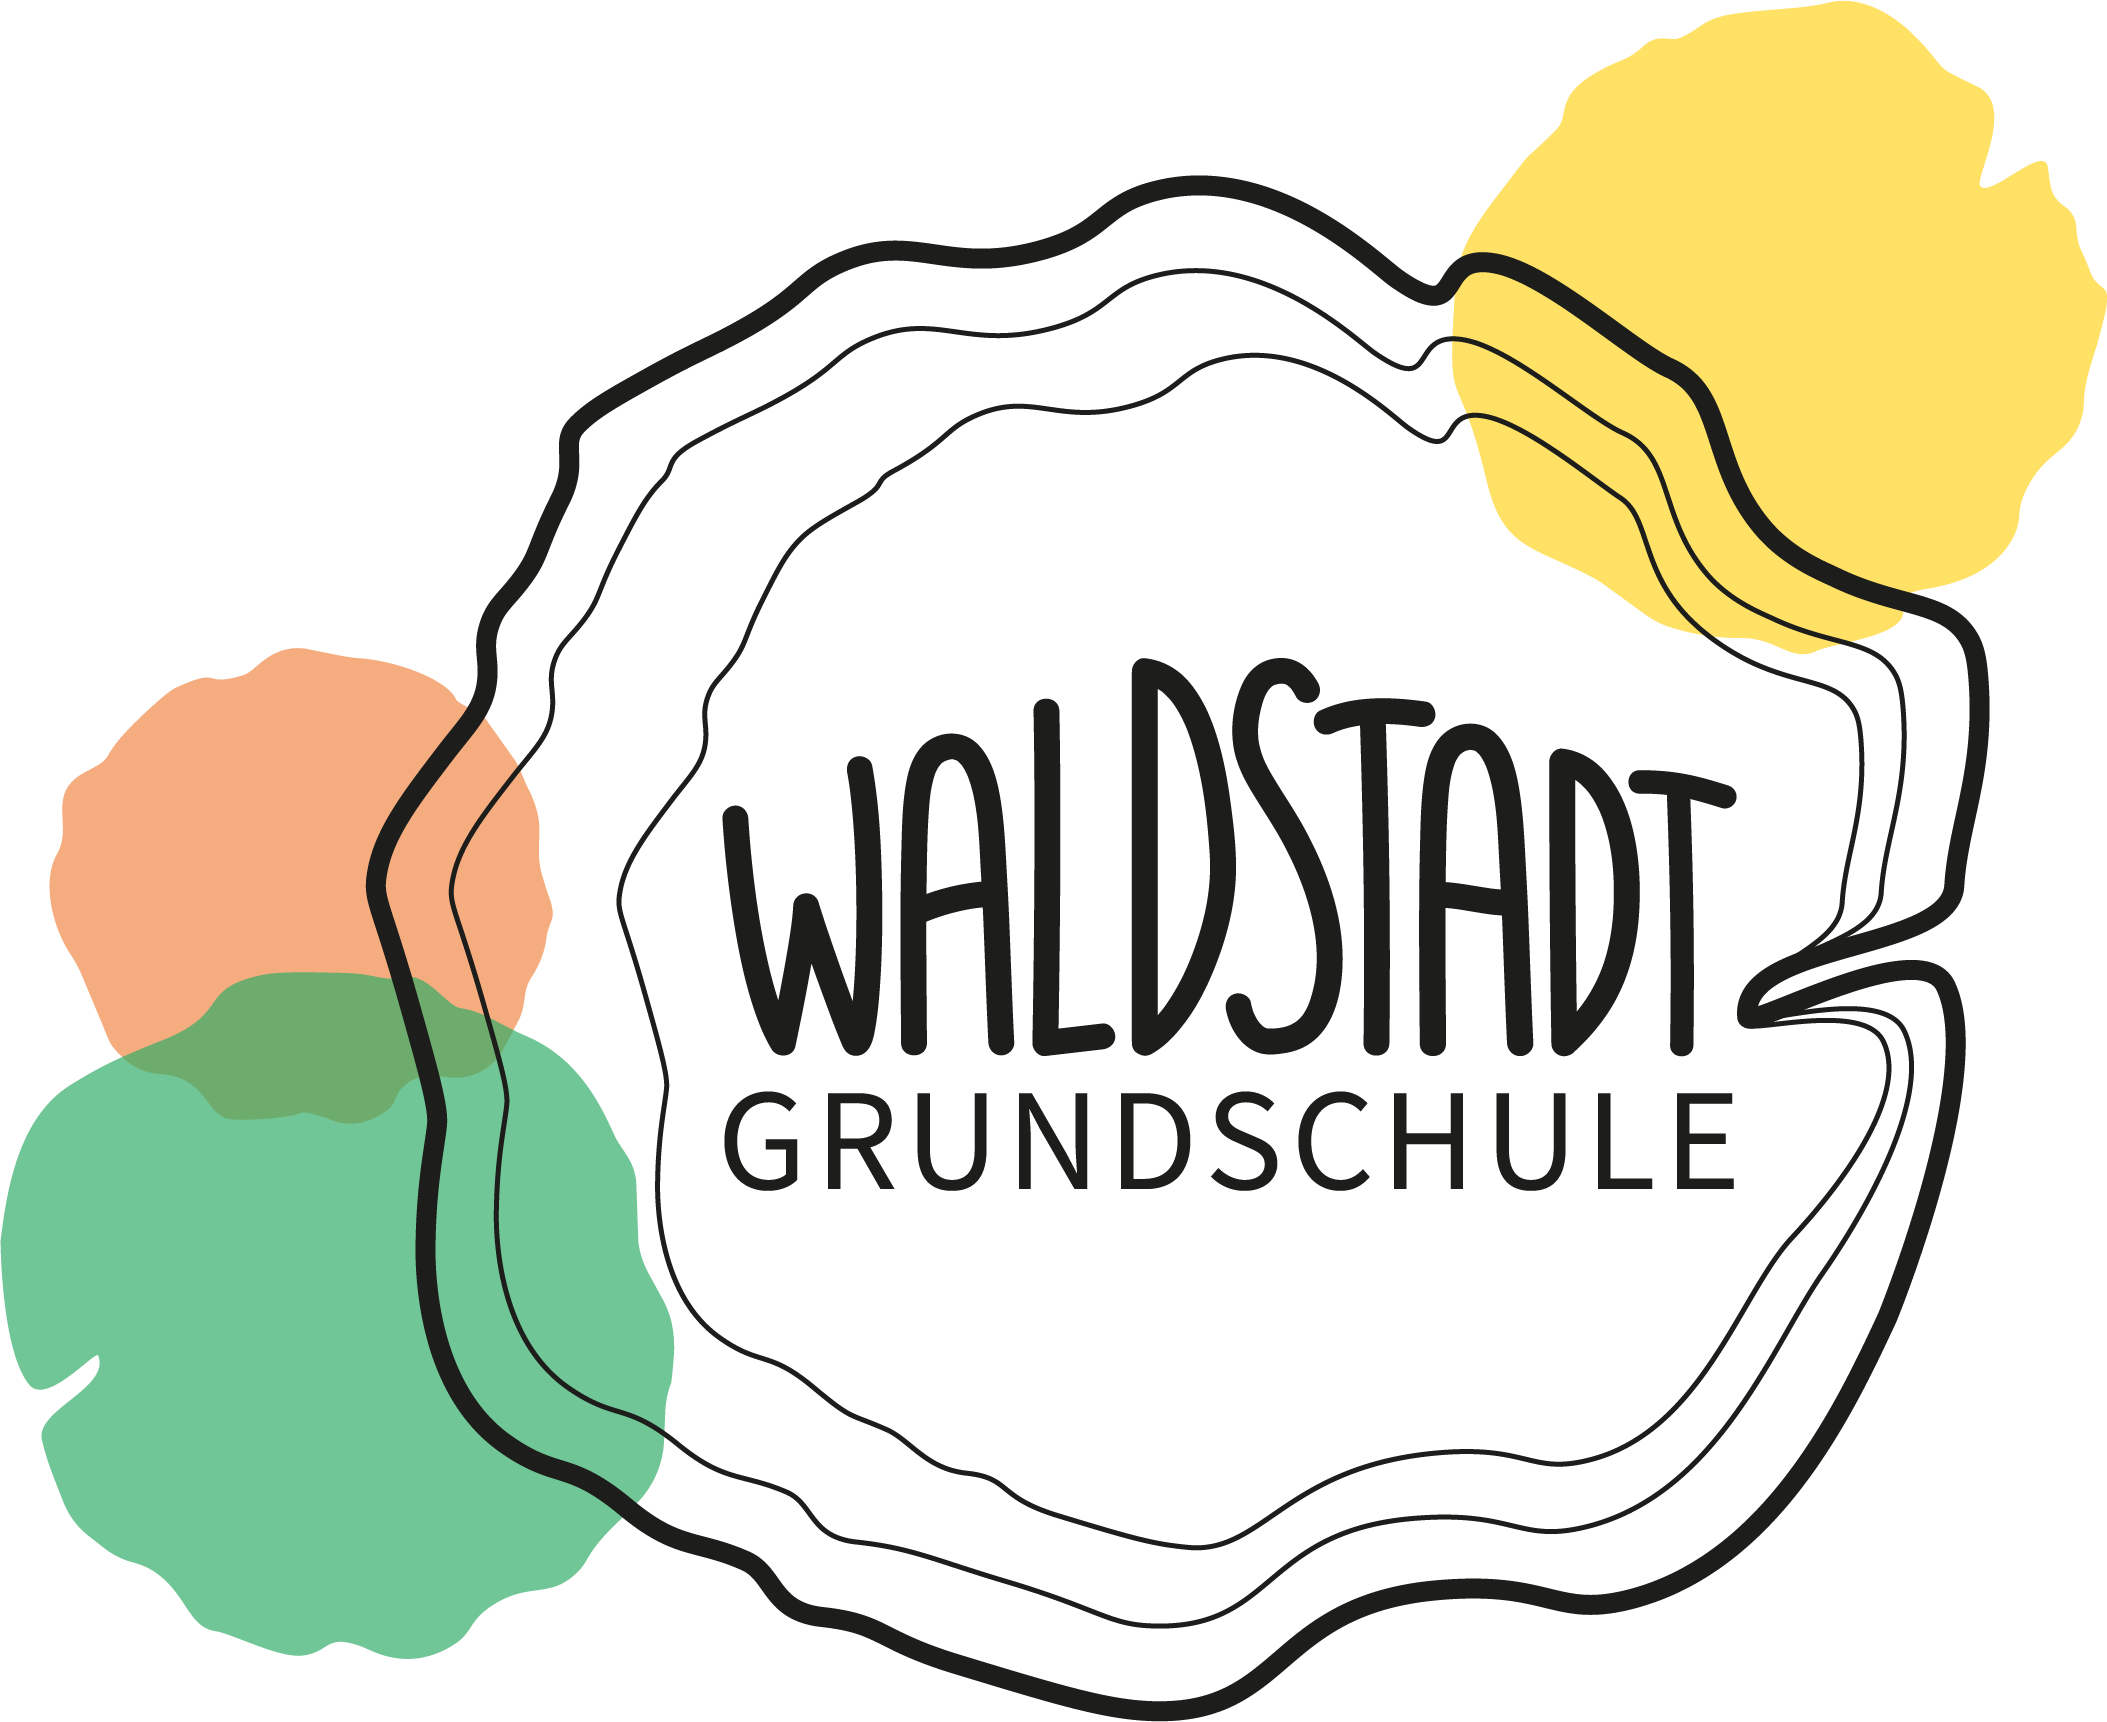 Waldstadt-Grundschule Potsdam